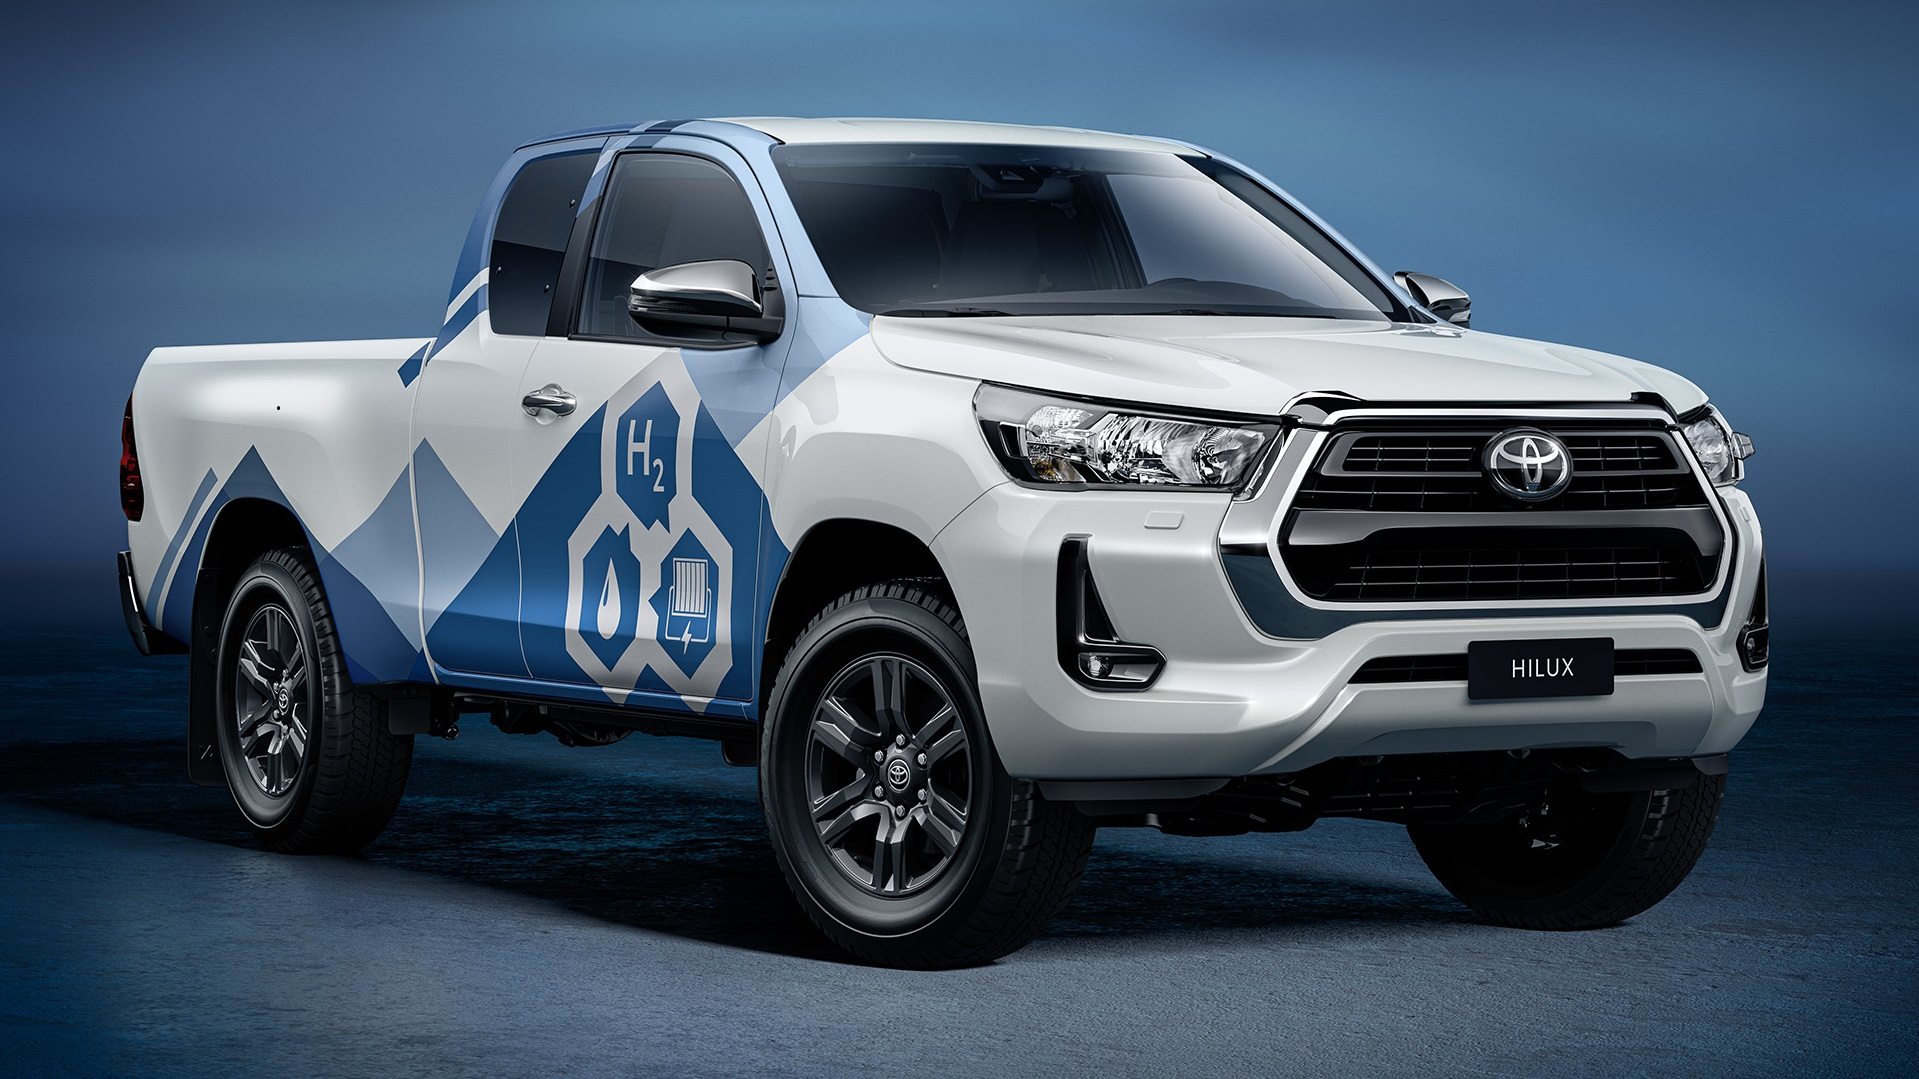 Hilux movida a hidrogênio: Os testes da Toyota começam em 2023